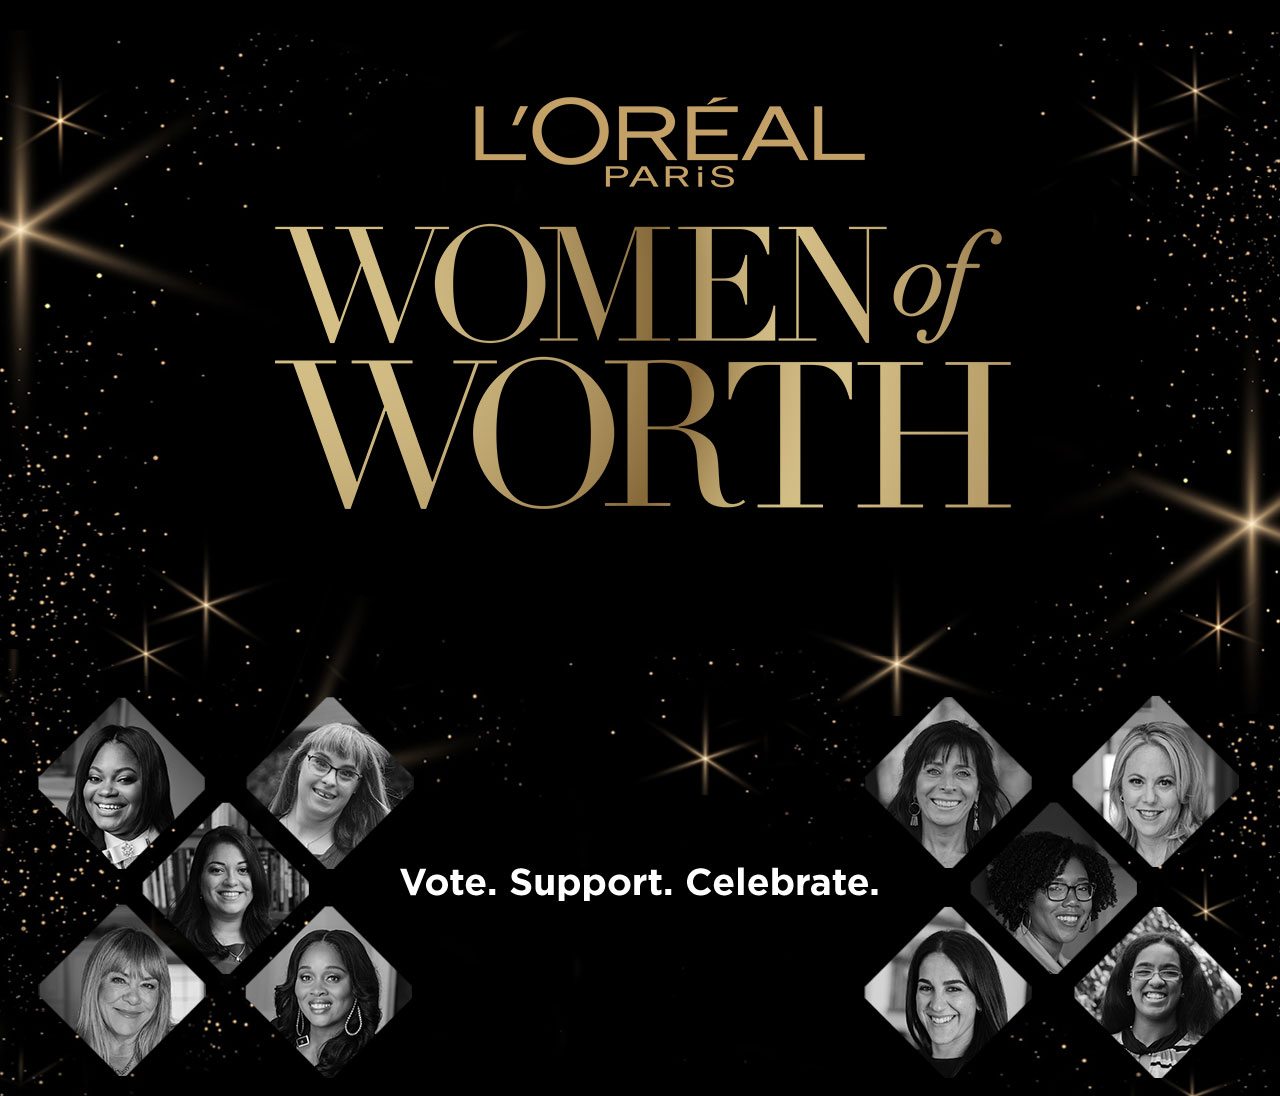 L’ORÉAL PARiS - WOMEN of WORTH - Vote. Support. Celebrate.